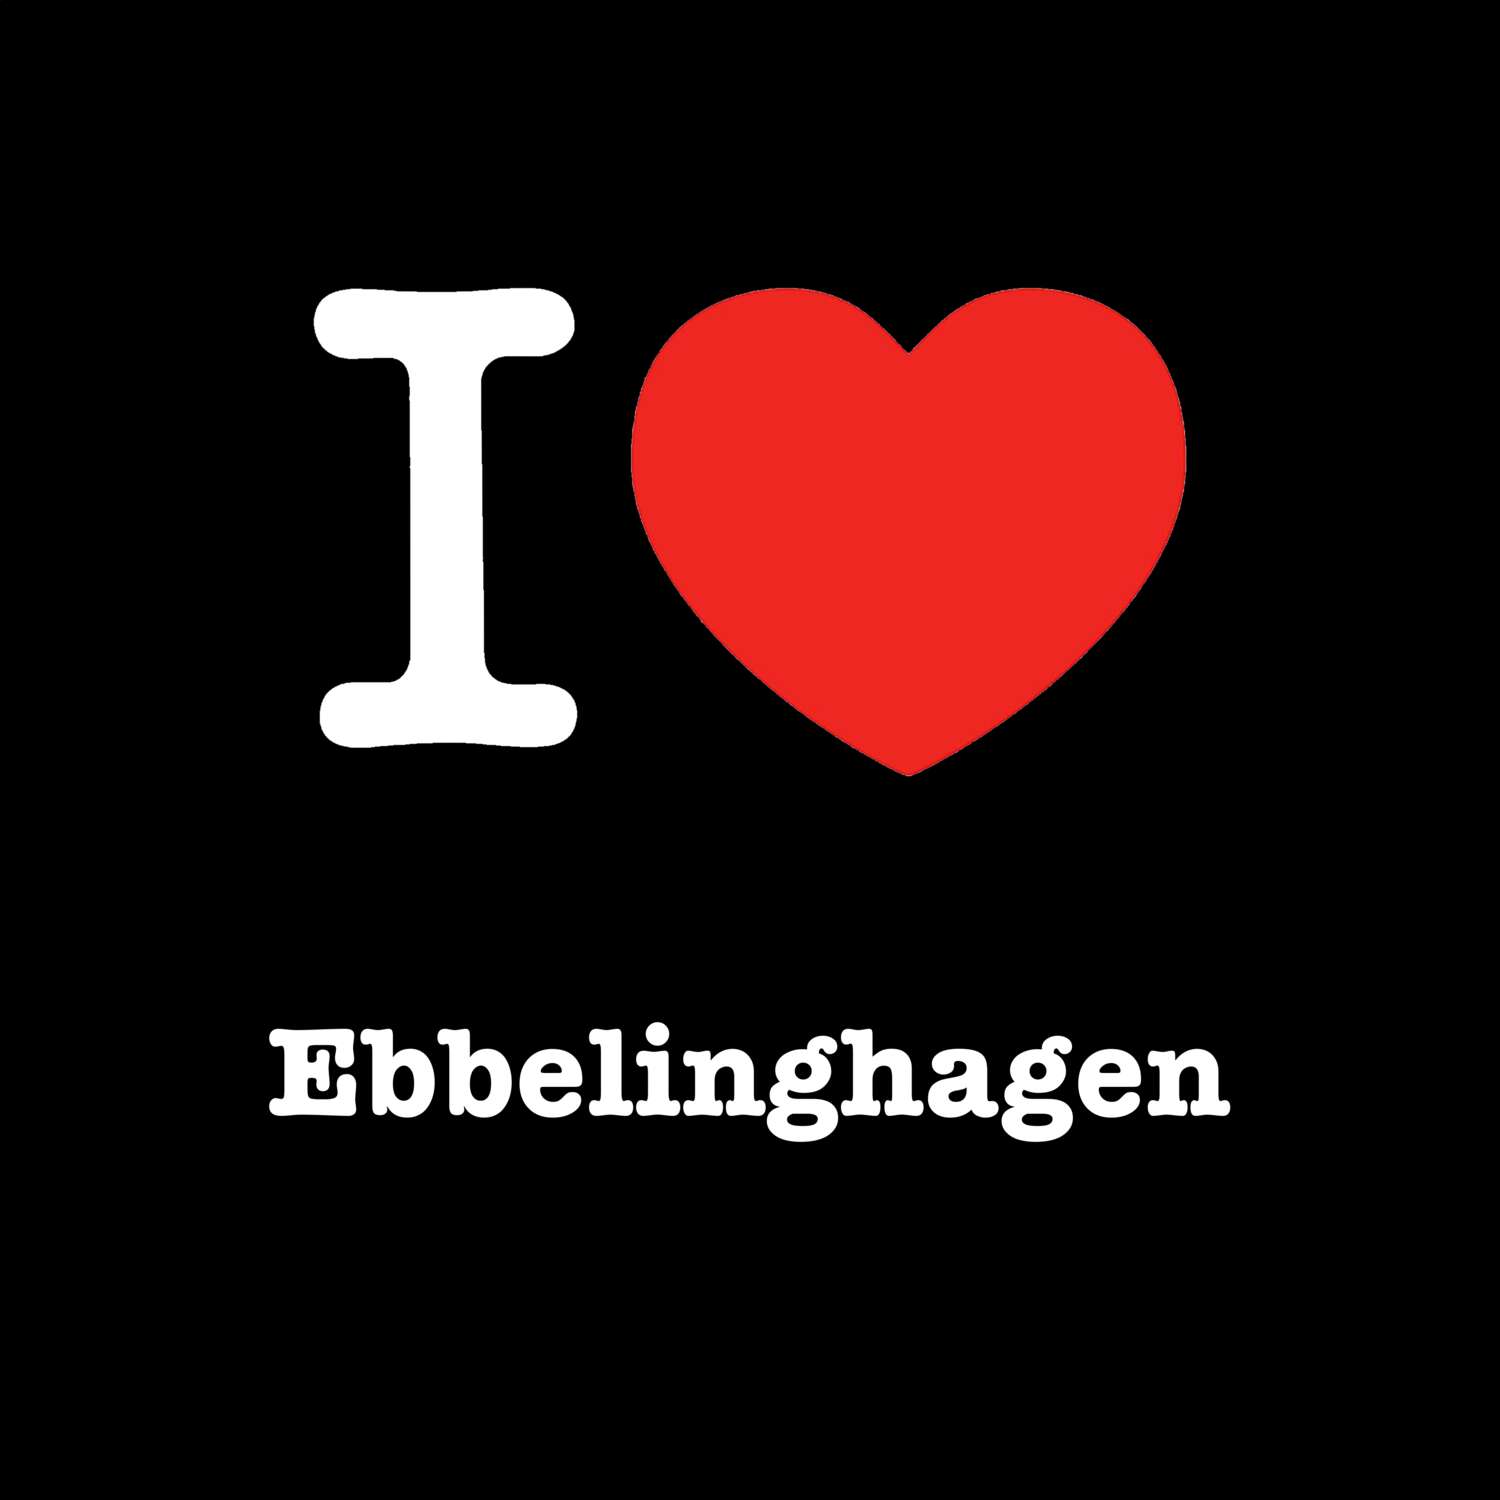 Ebbelinghagen T-Shirt »I love«